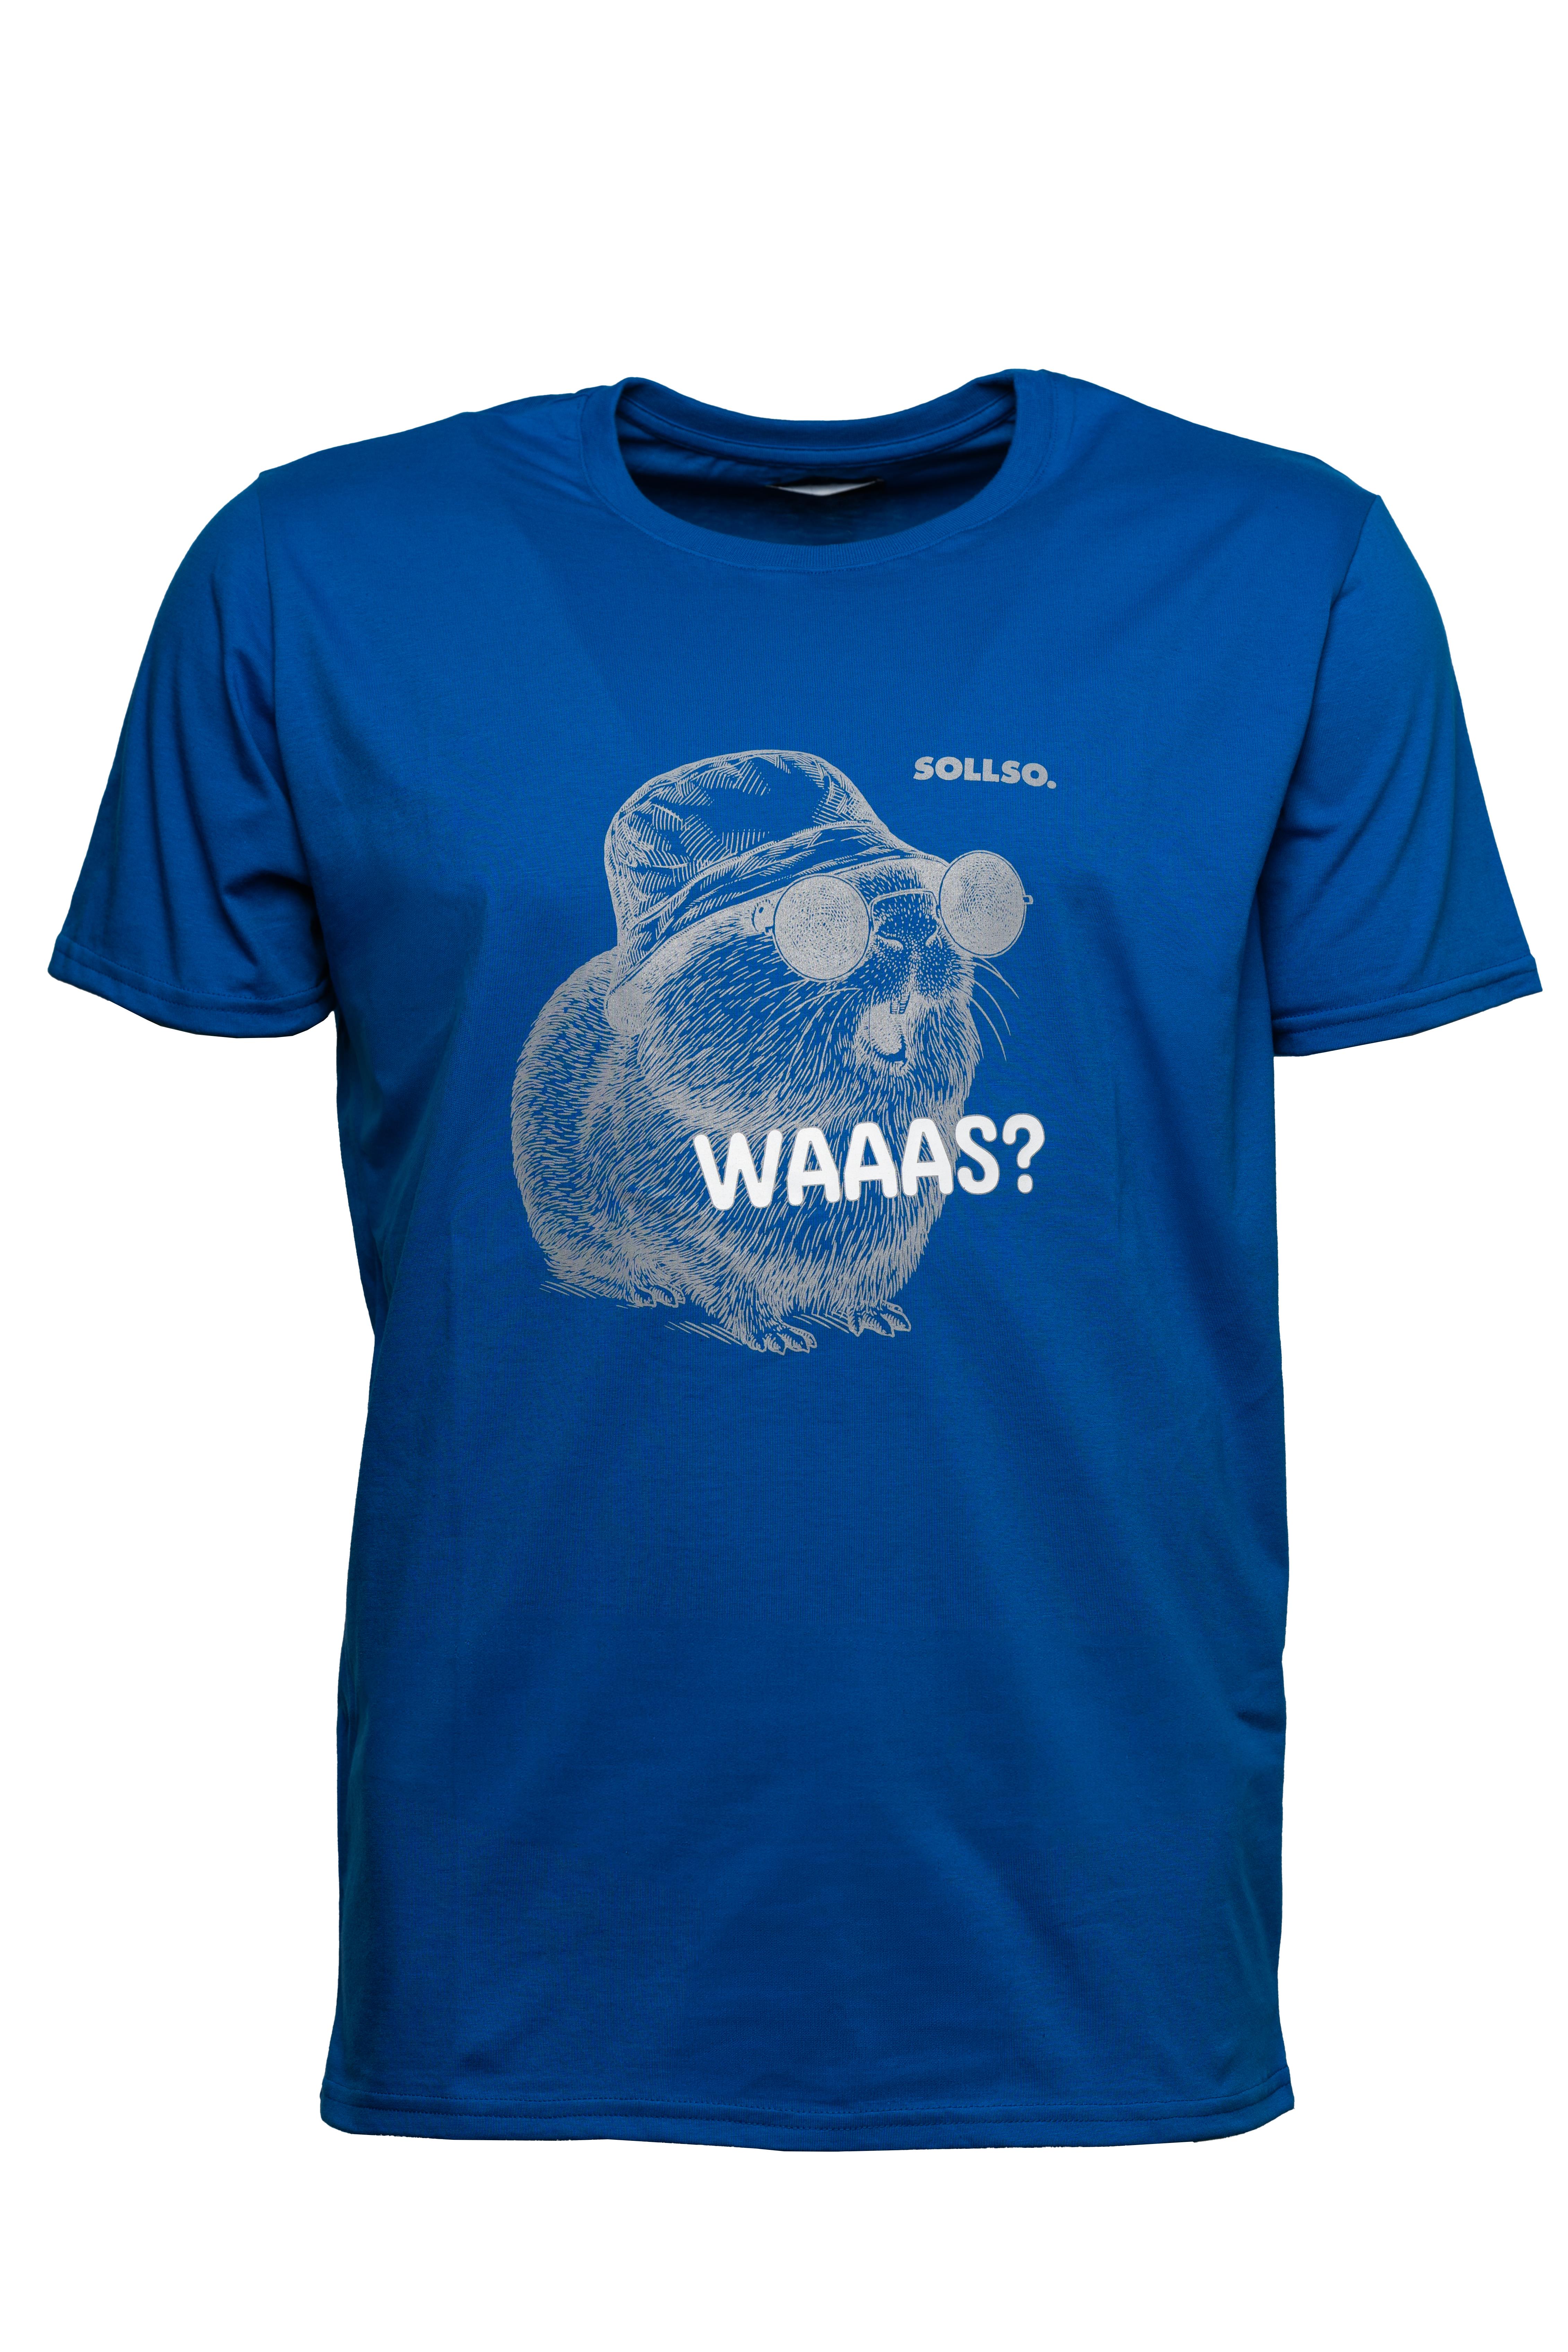 SOLLSO. T-Shirt "Guinea Pig" Farbe Ocean Blue, Größe 9XL